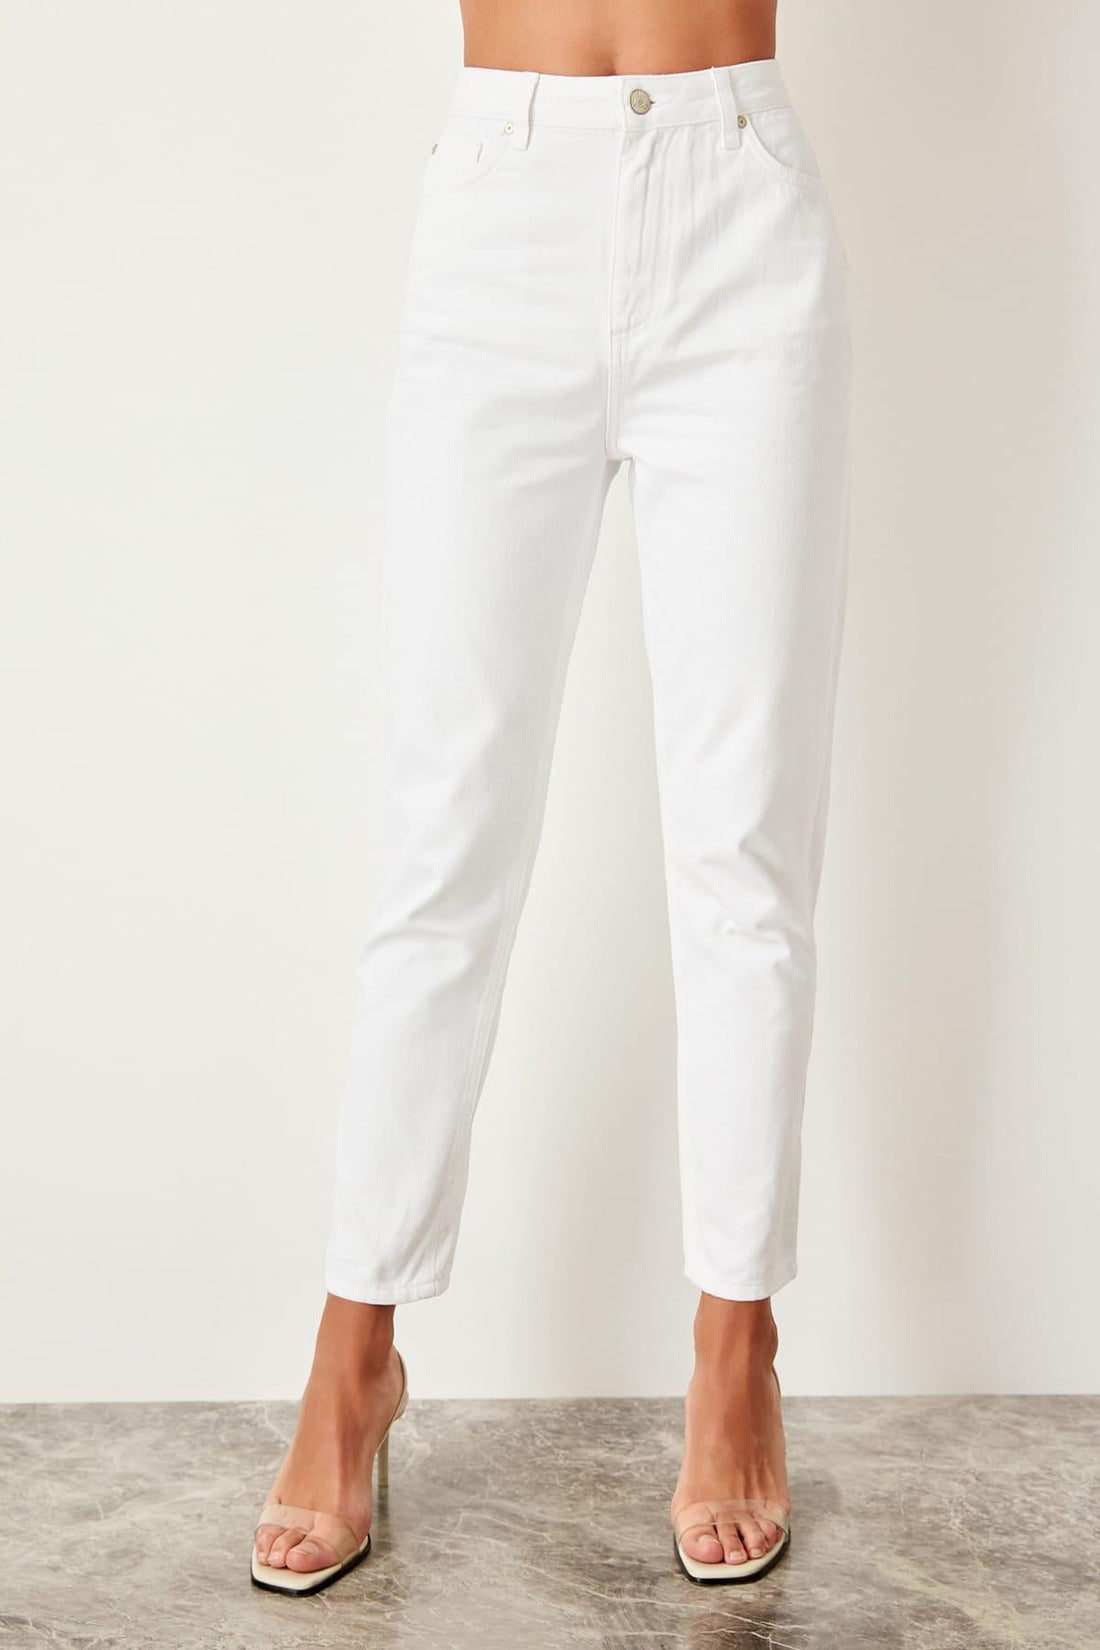 Women's Casual Cotton High-Waist Jeans